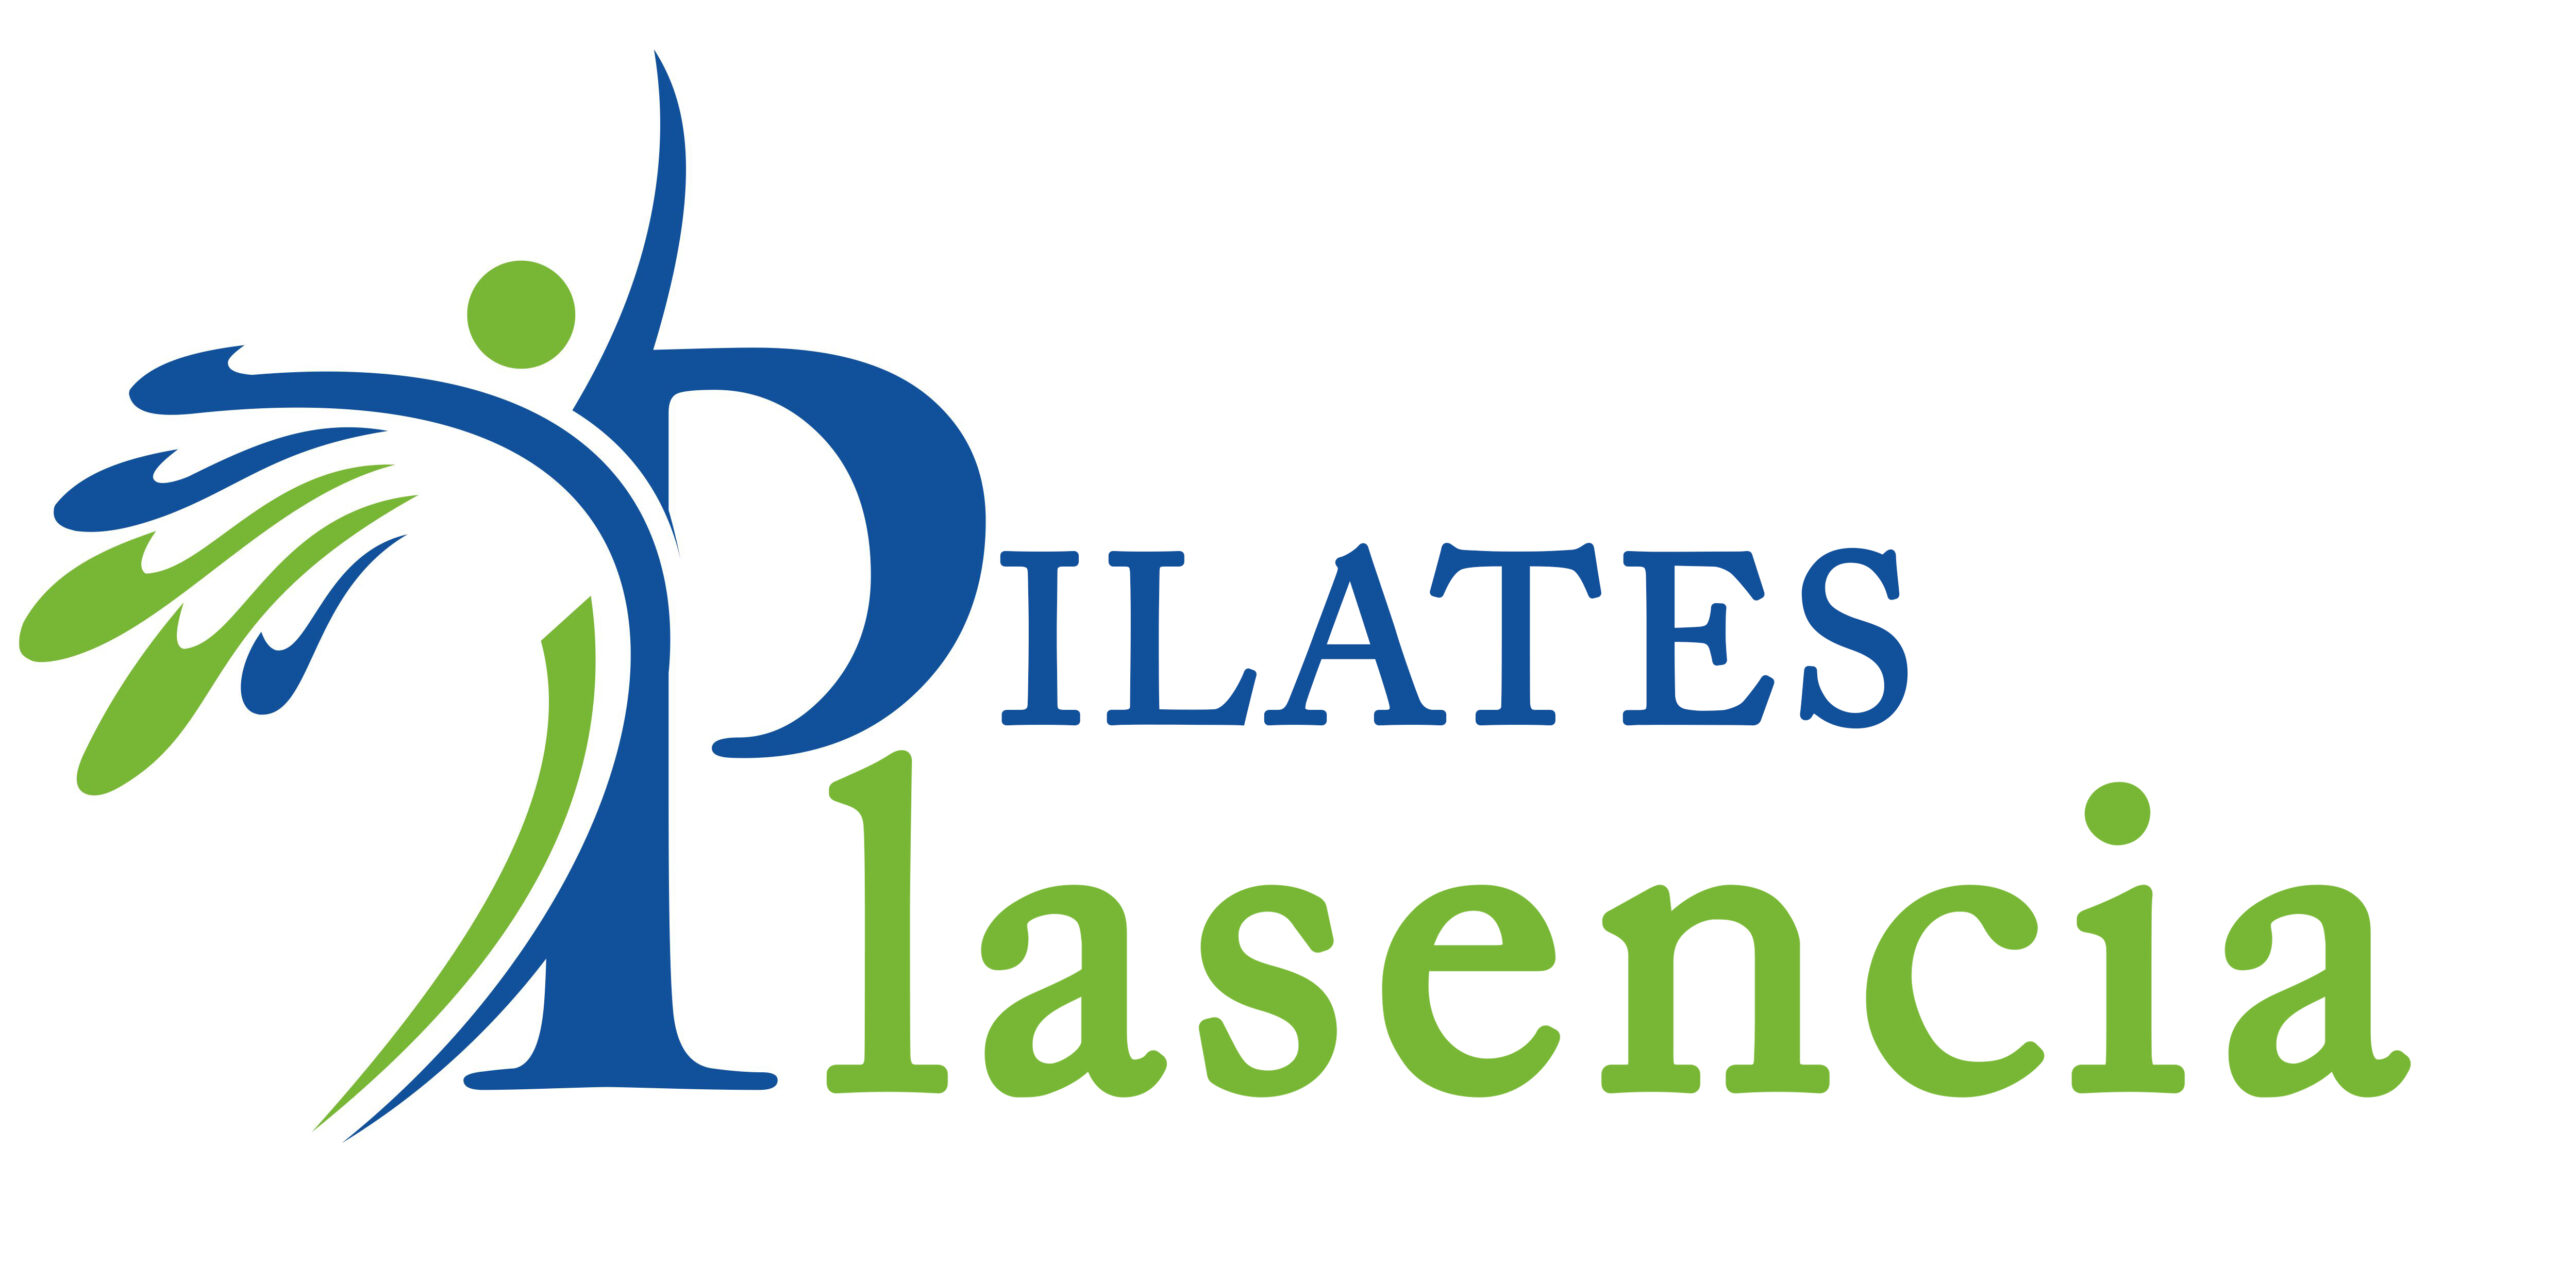 PIlates Plasencia